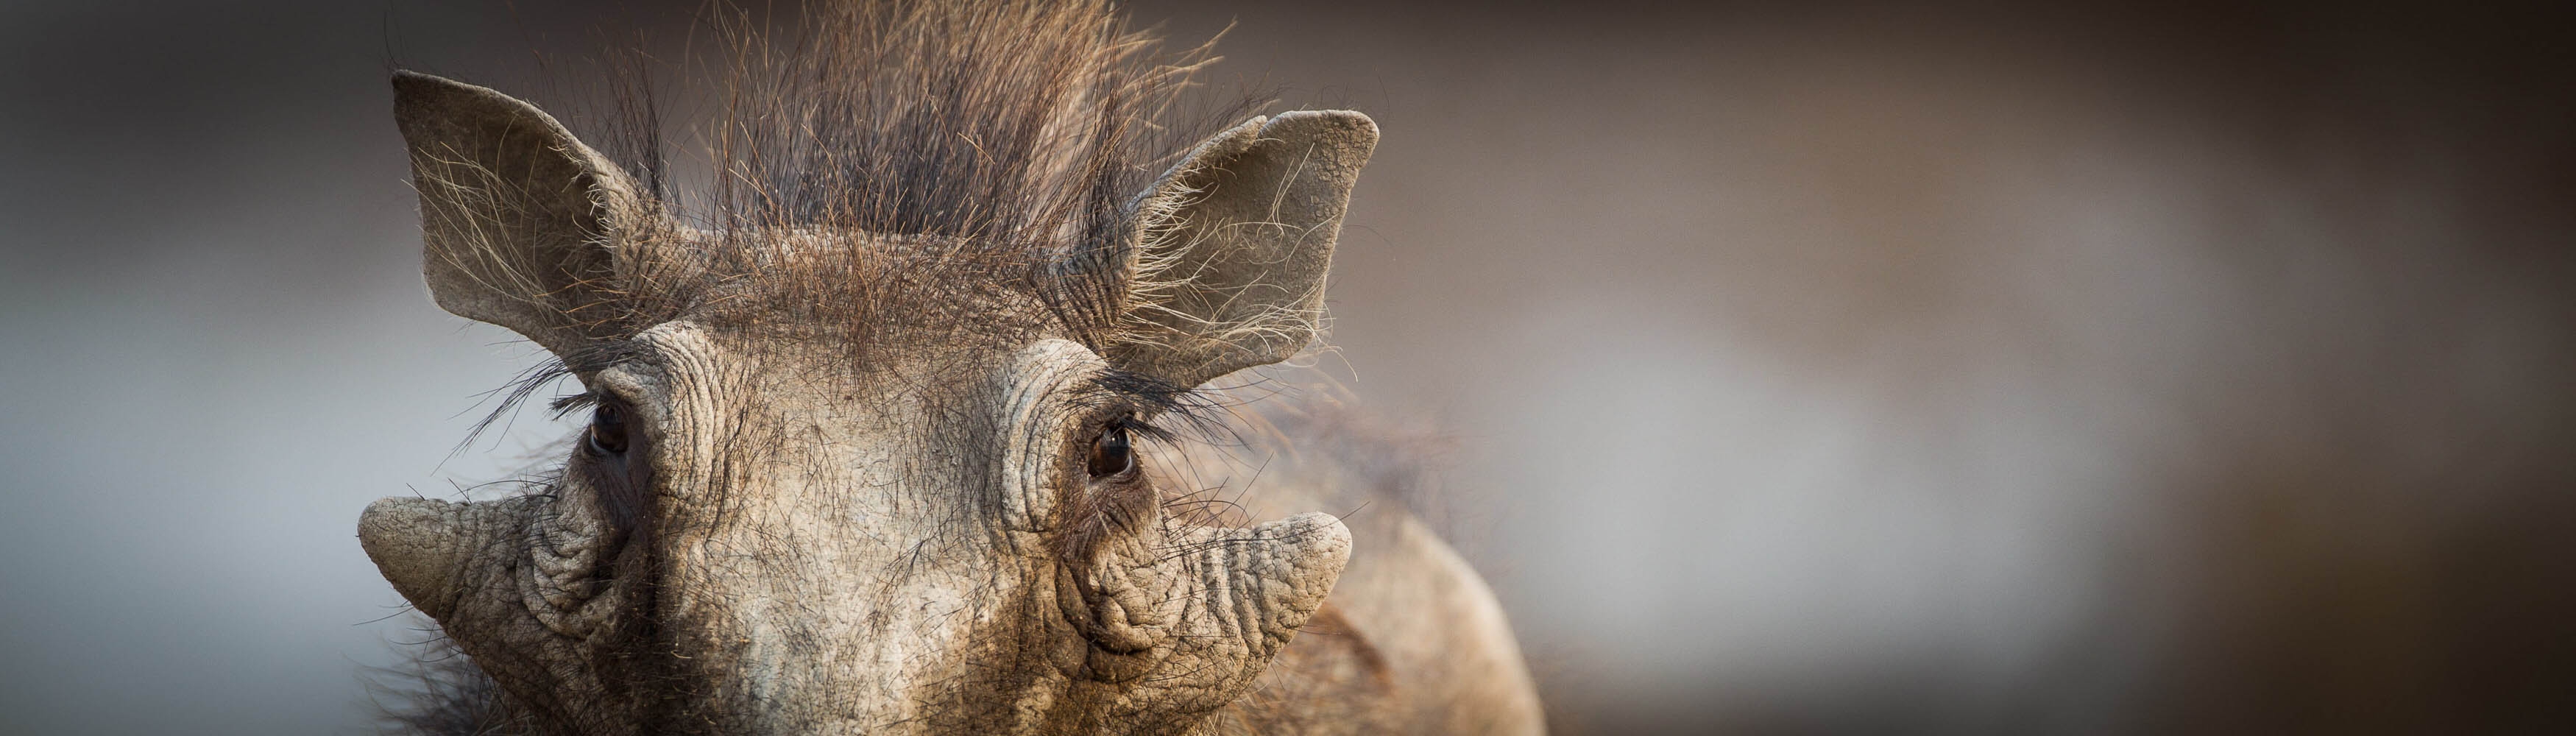 Warthog pic taken in hide | Morgan Trimble